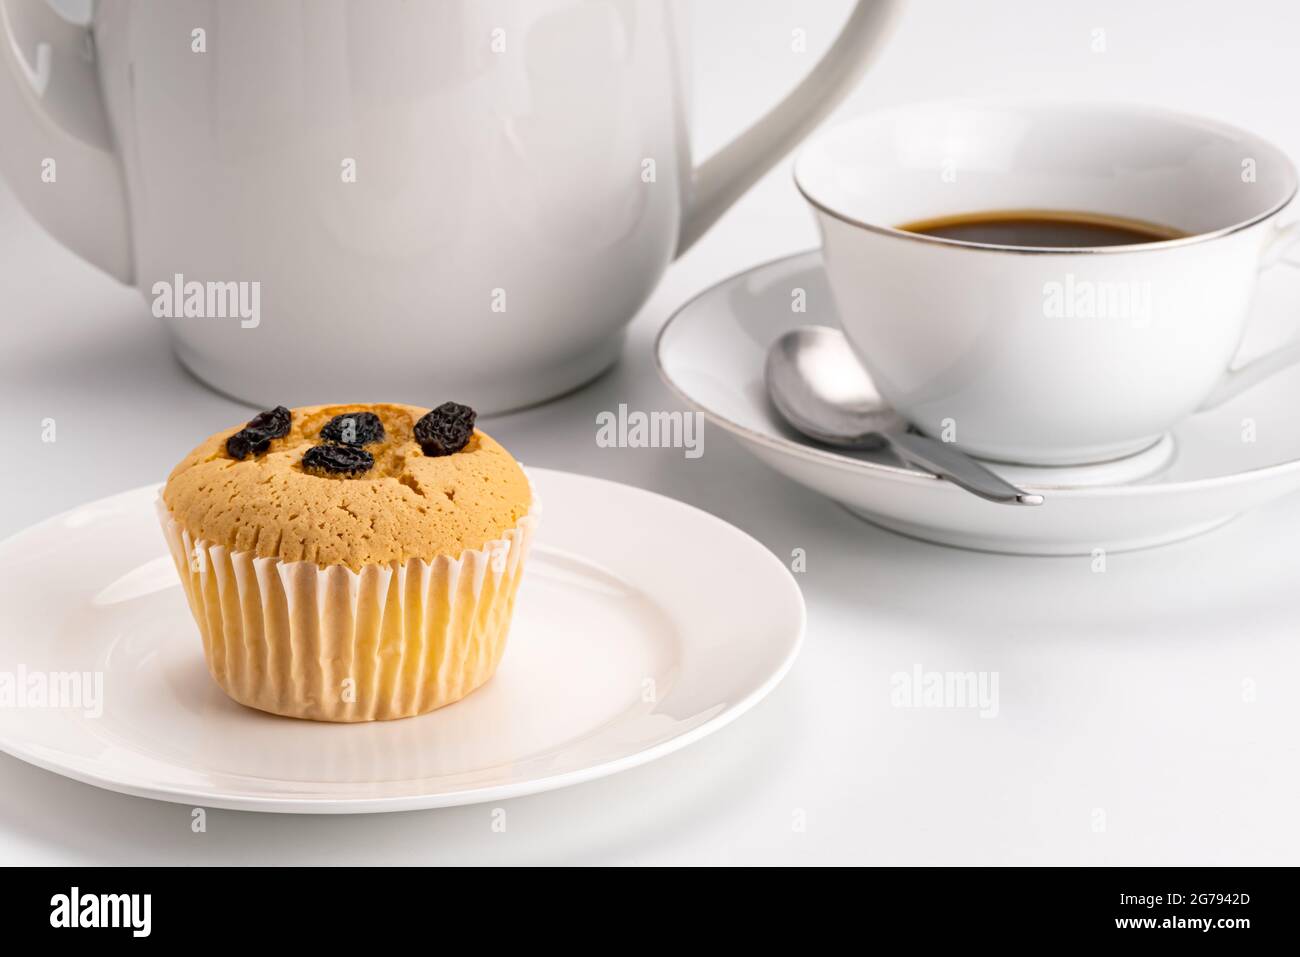 Seitenansicht des einfachen Frühstücks mit Rosinenschwamm Cupcake in weißer Keramikschale und einer Tasse heißen schwarzen Kaffee mit Metalllöffel und einem Kaffeekocher auf w Stockfoto